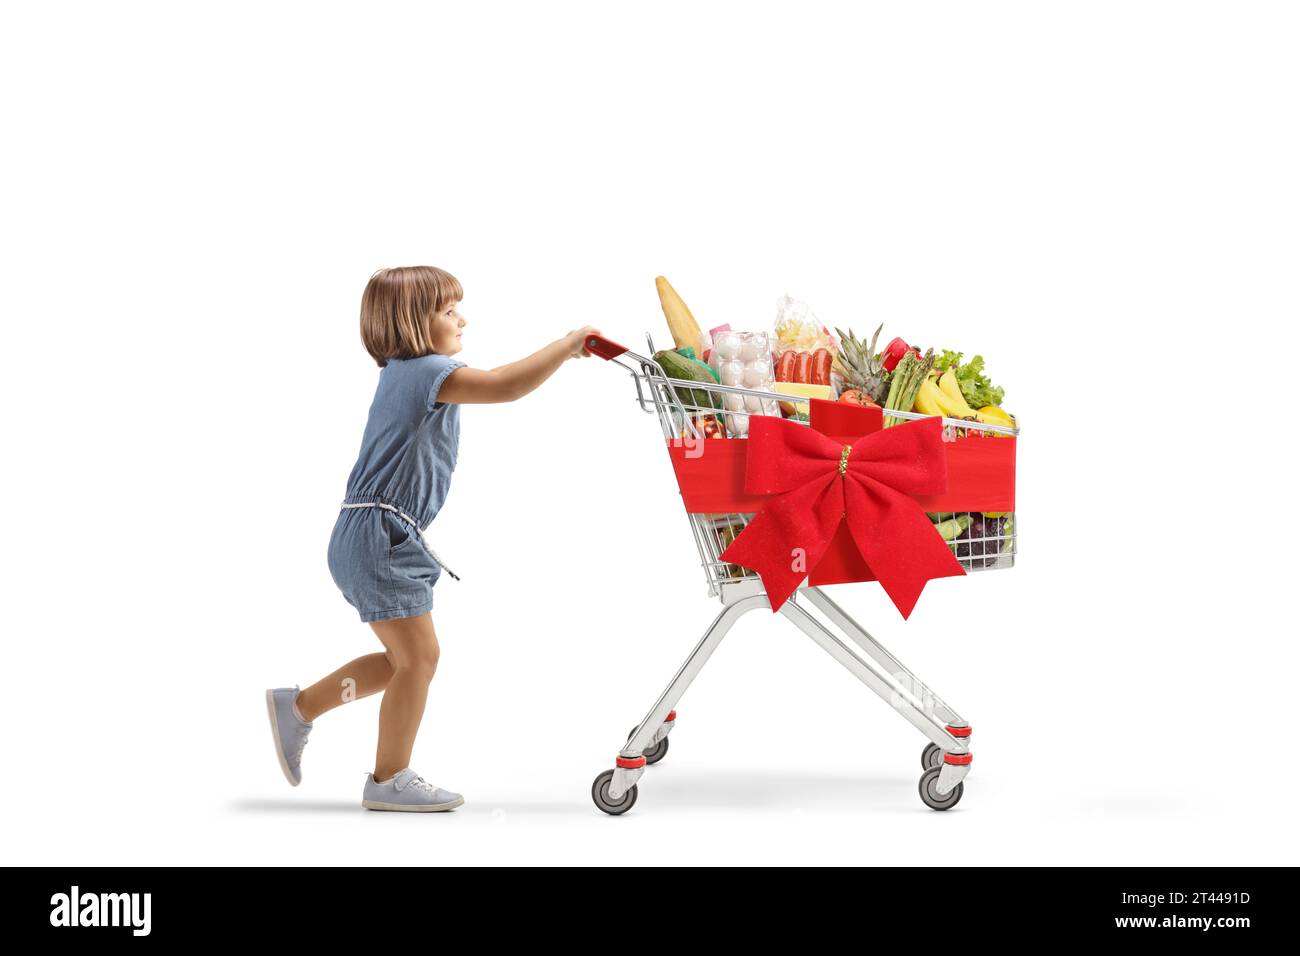 Profilaufnahme eines kleinen Mädchens, das einen Einkaufswagen schiebt, gebunden mit rotem Band, isoliert auf weißem Hintergrund Stockfoto